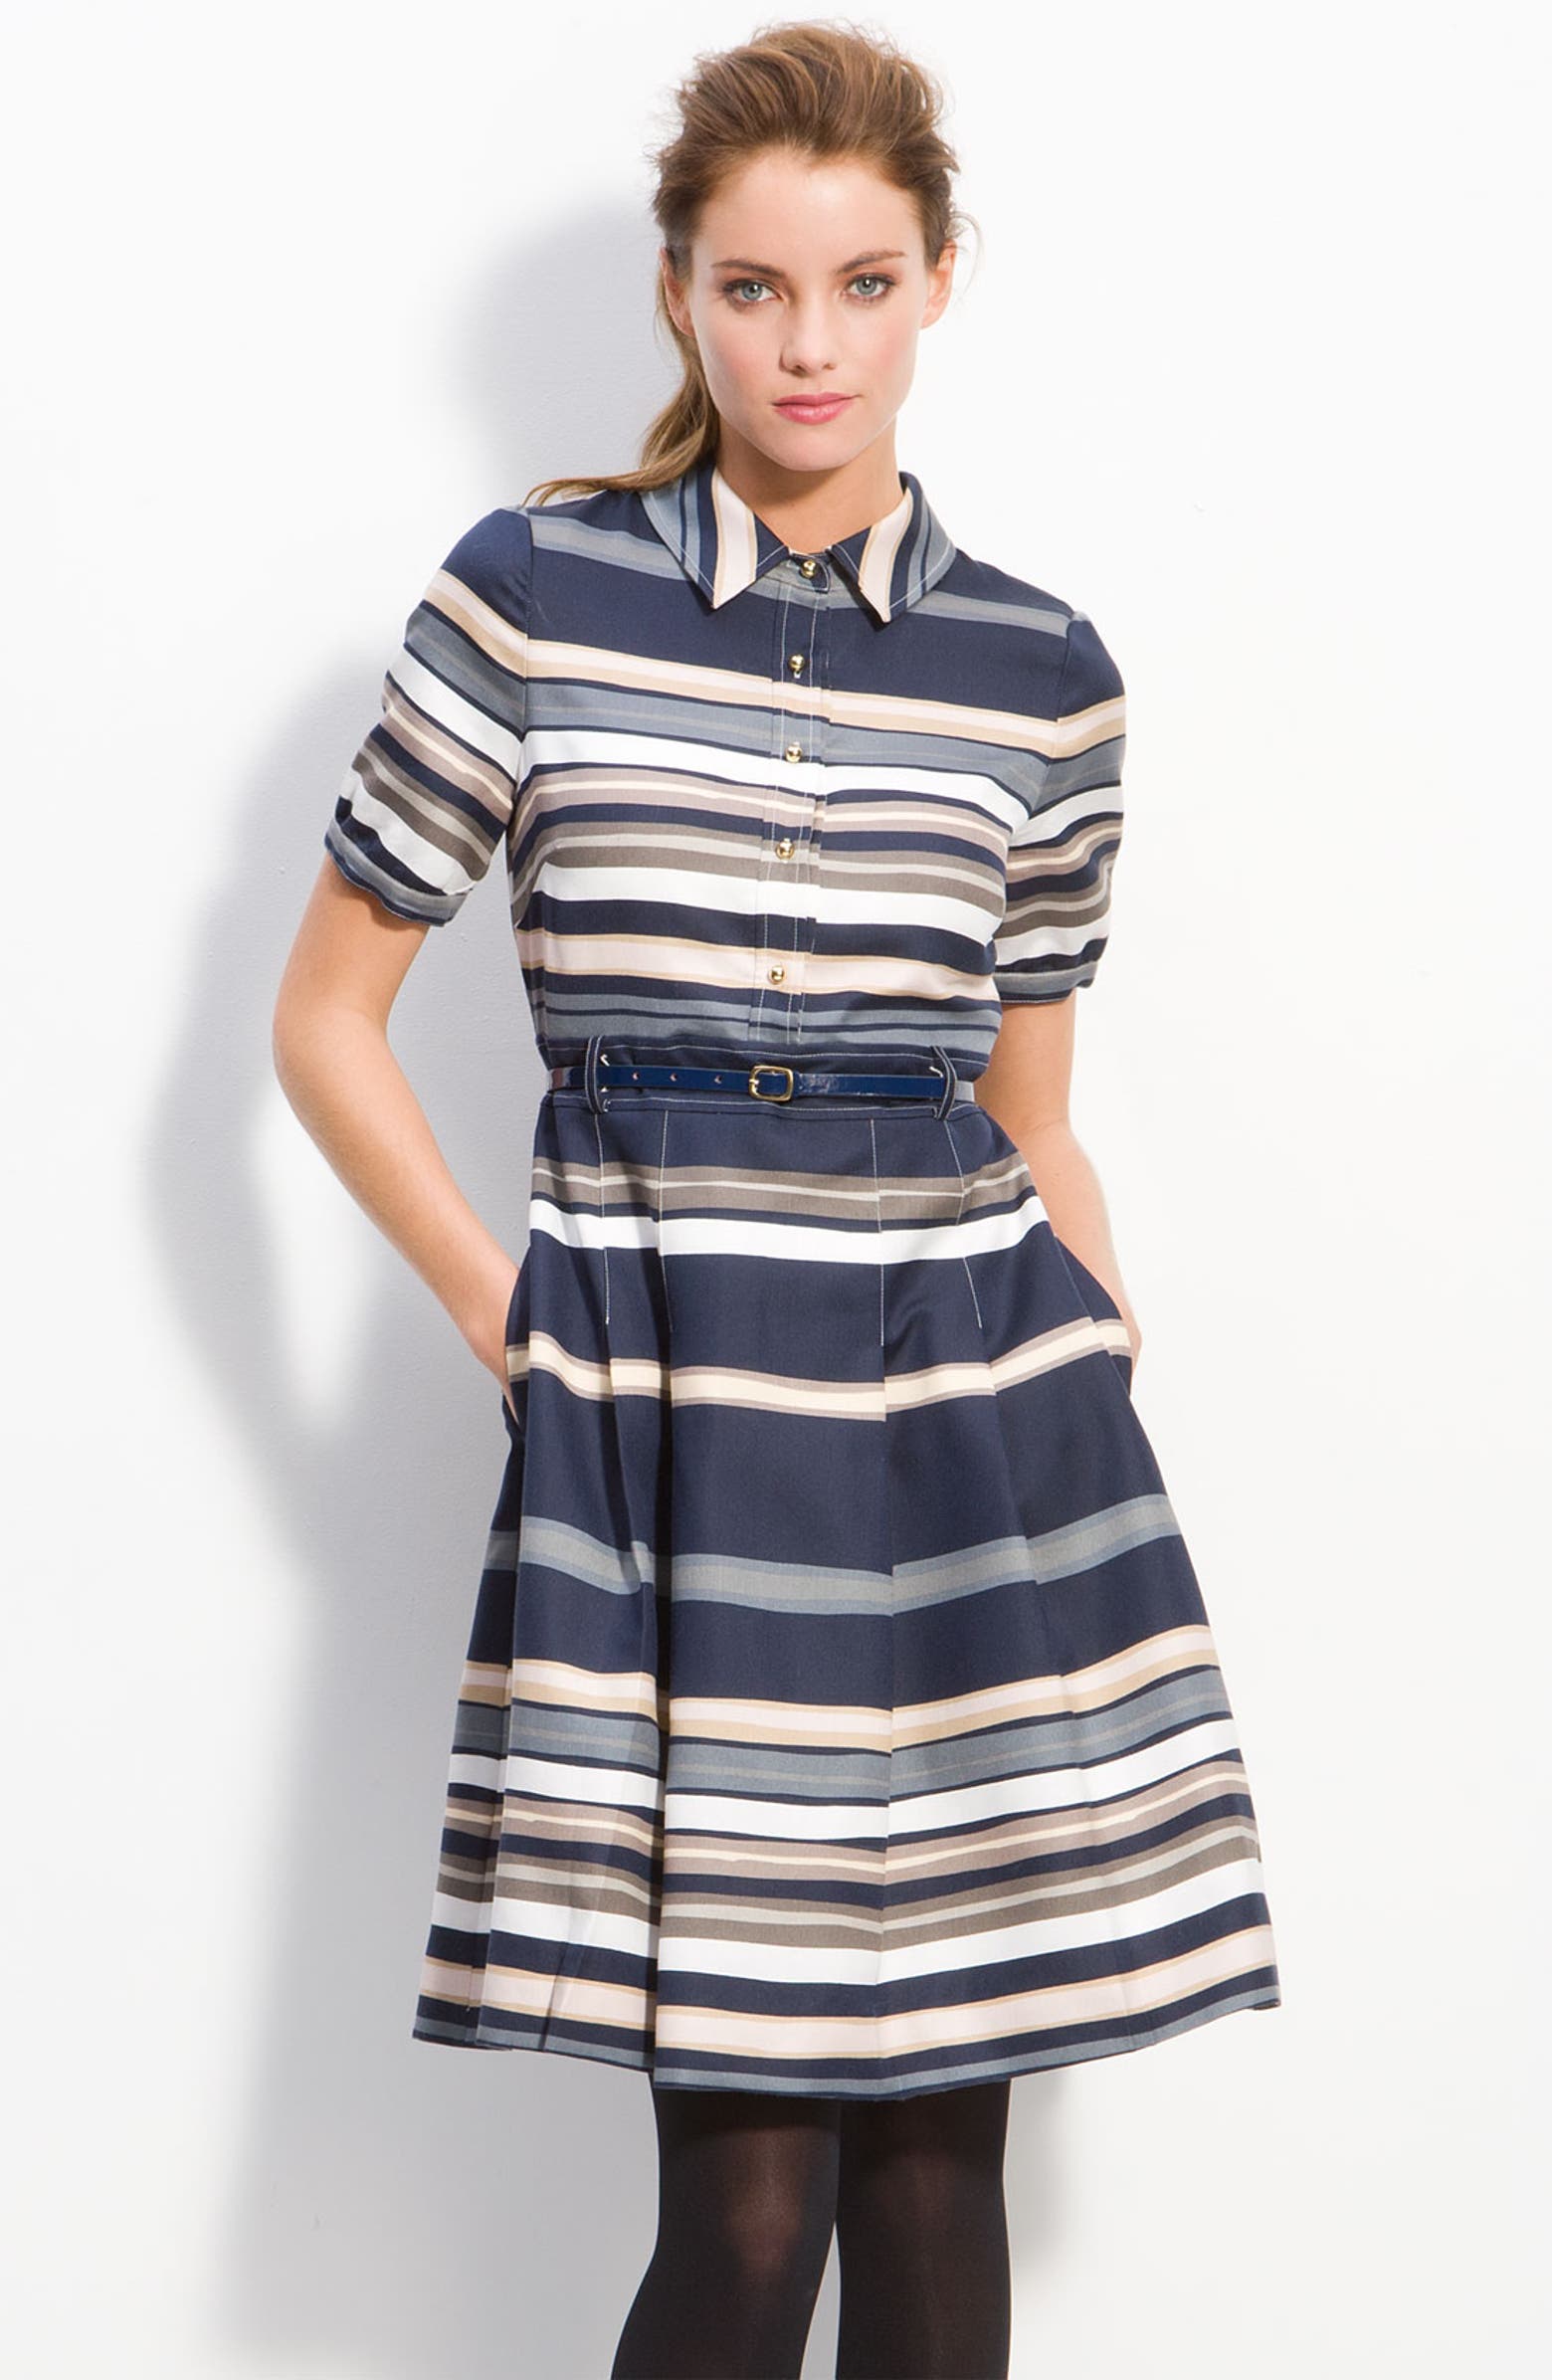 kate spade new york 'jeanette' stripe shirt dress | Nordstrom